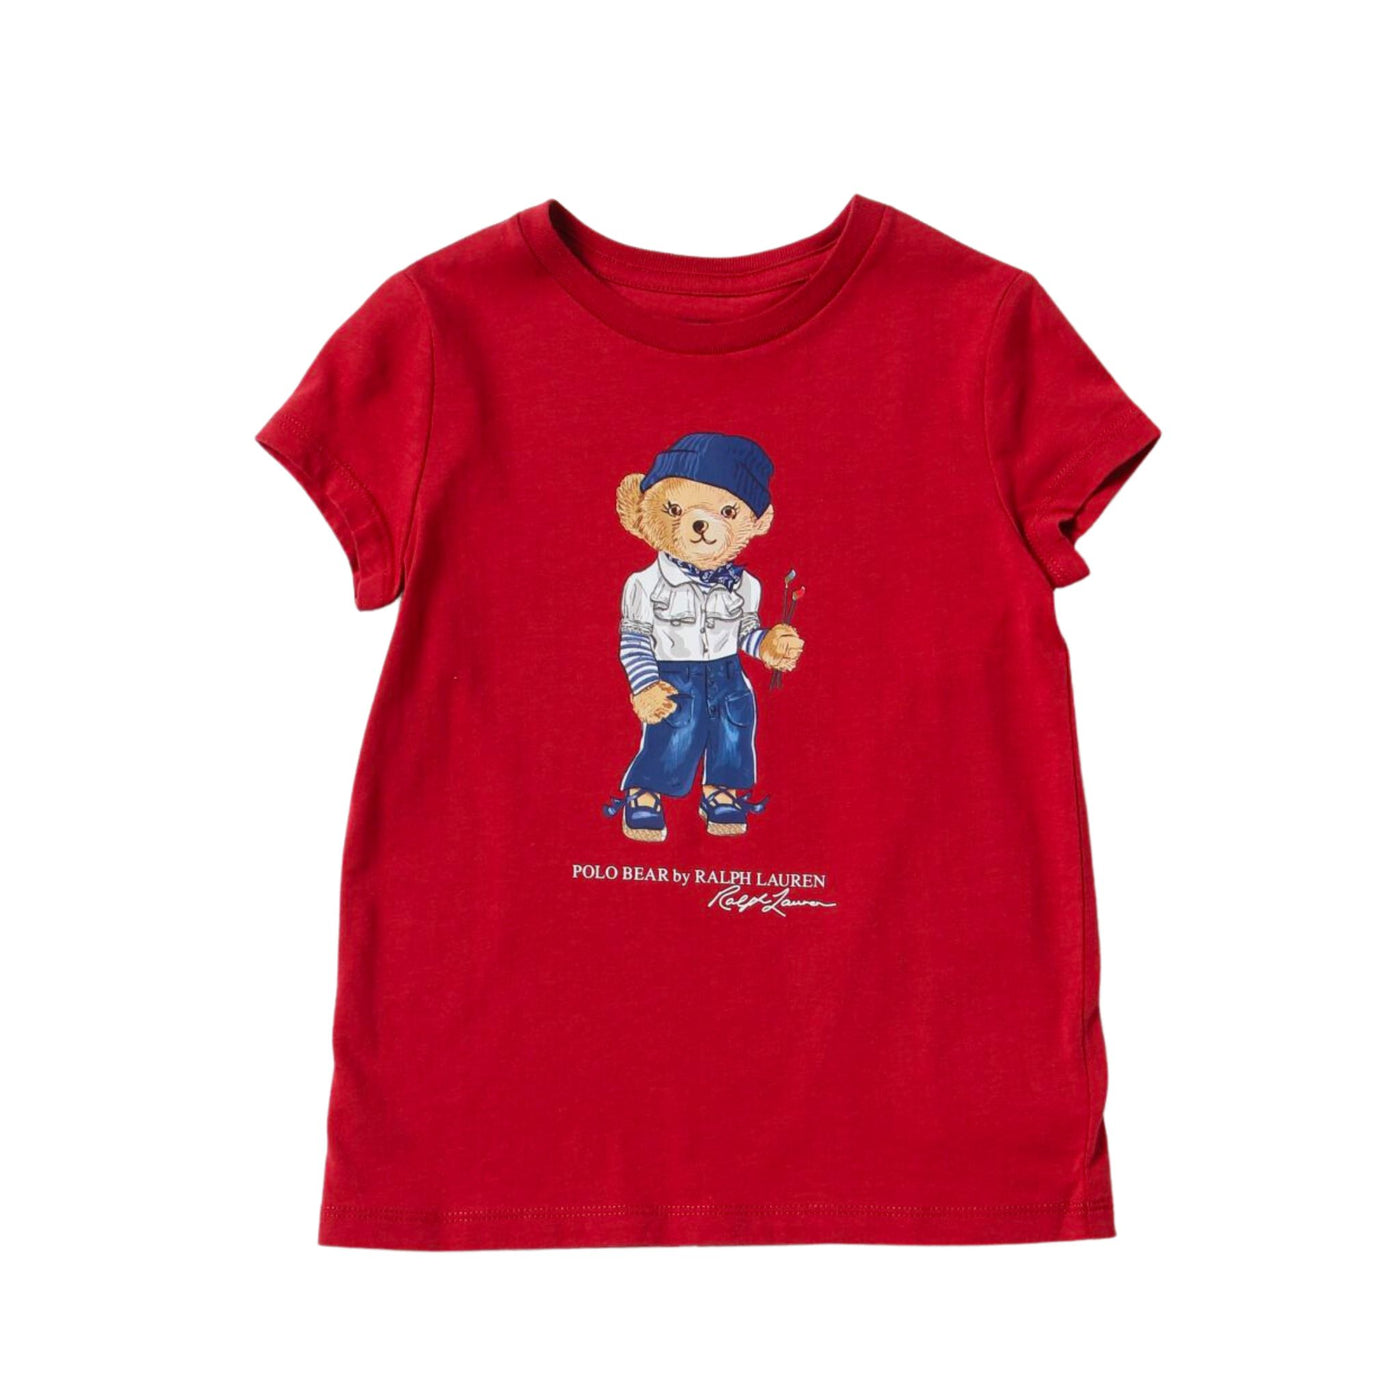 T-shirt Bambina 2-4 anni con orso Polo